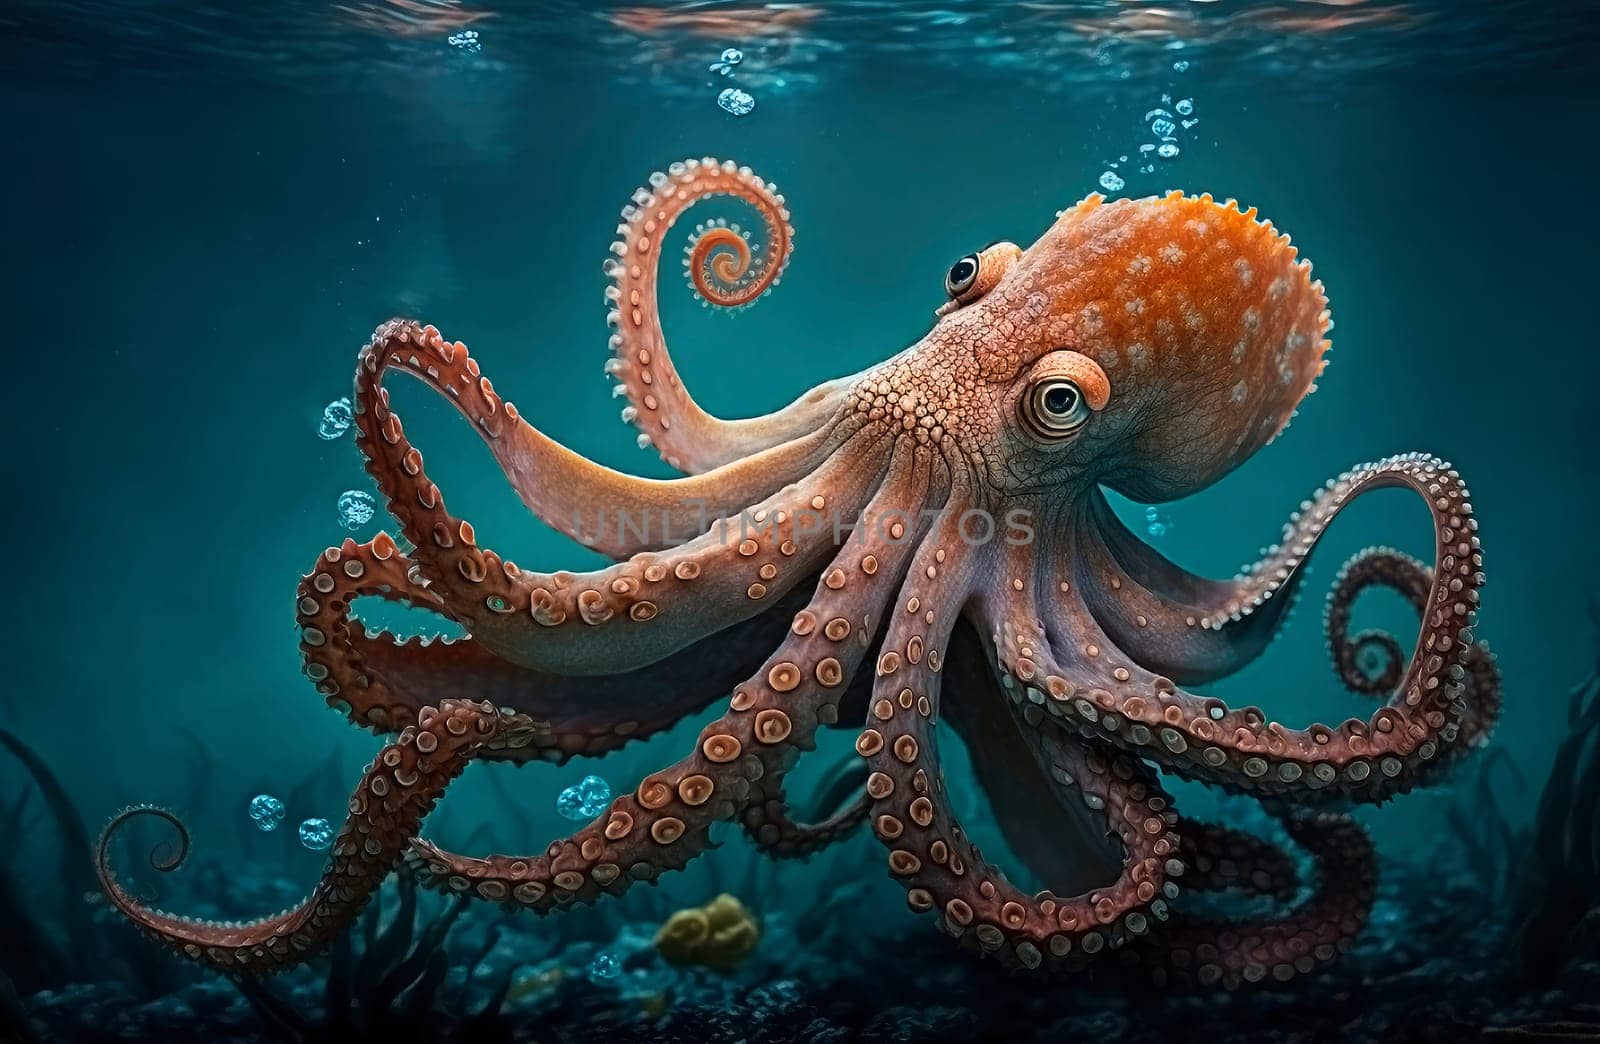 octopuses swim in the sea. by yanadjana